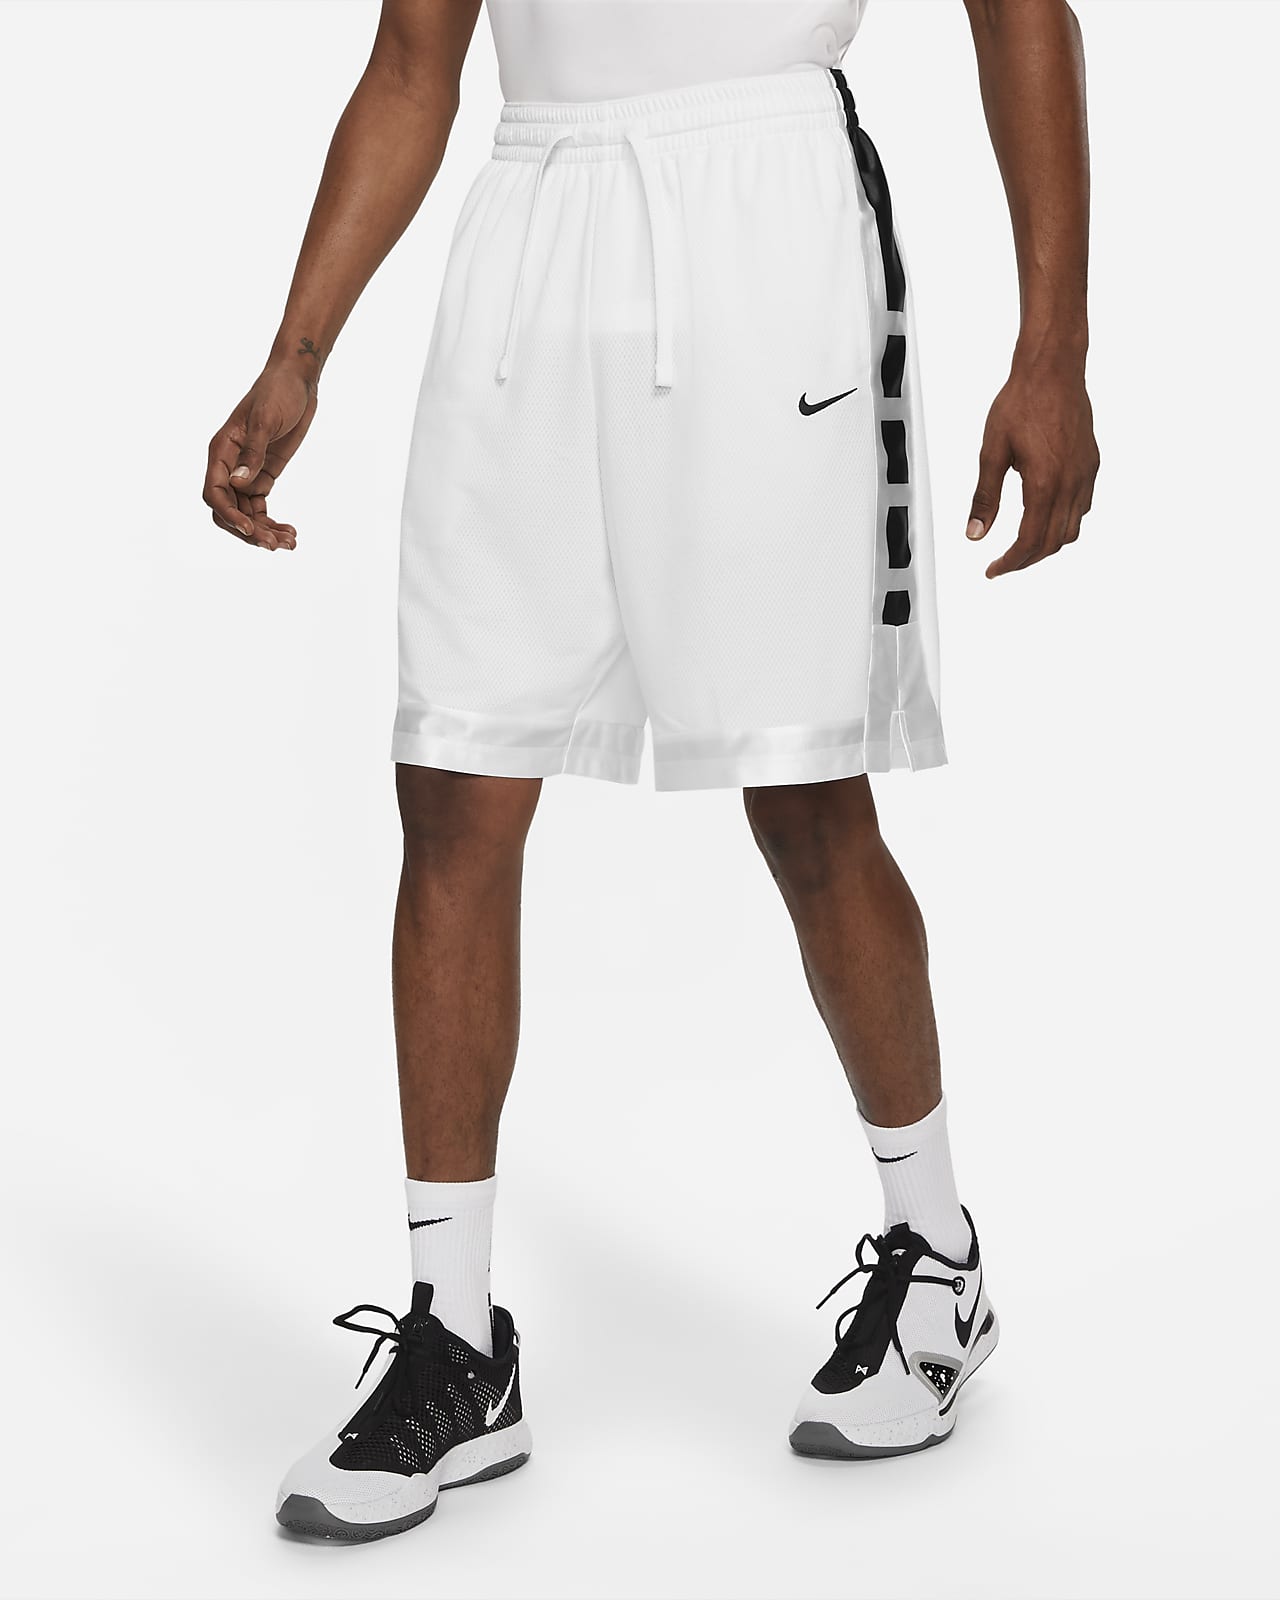 Fe ciega insulto telar Nike Dri-FIT Elite Stripe Men's Basketball Shorts. Nike.com